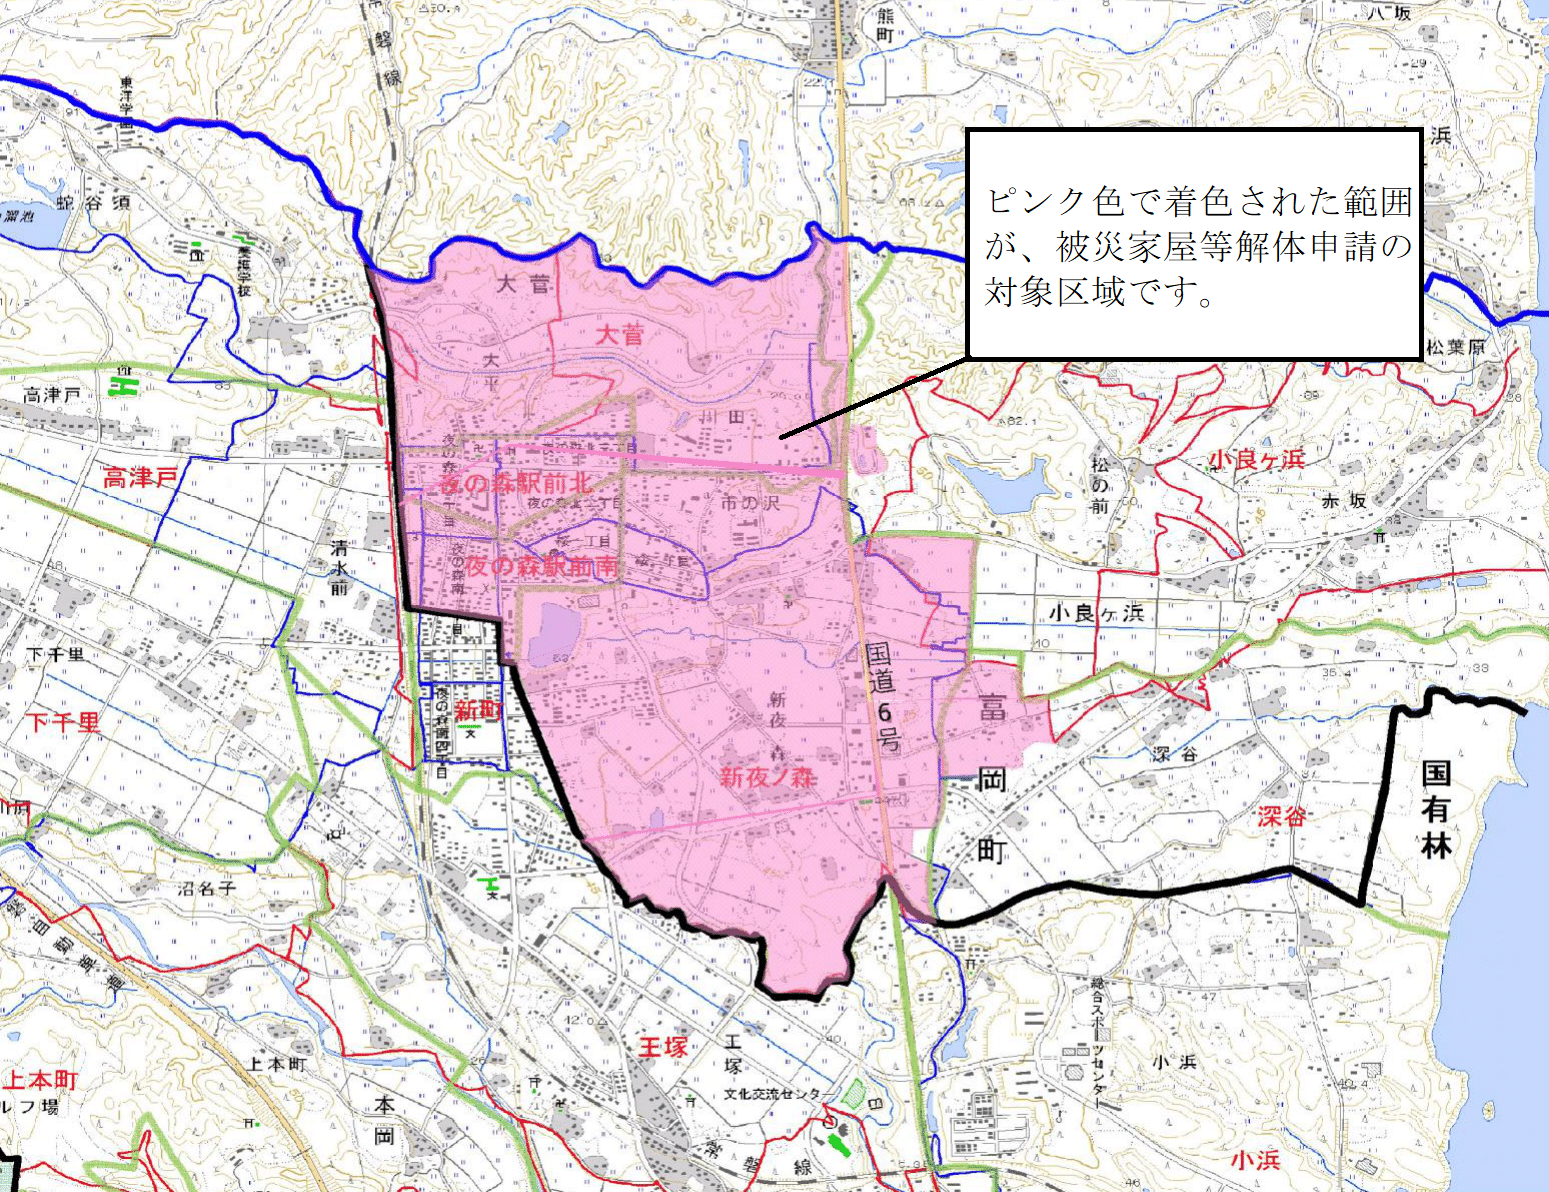 ピンク色で着色された範囲が、被災家屋等解体申請の対象区域です。